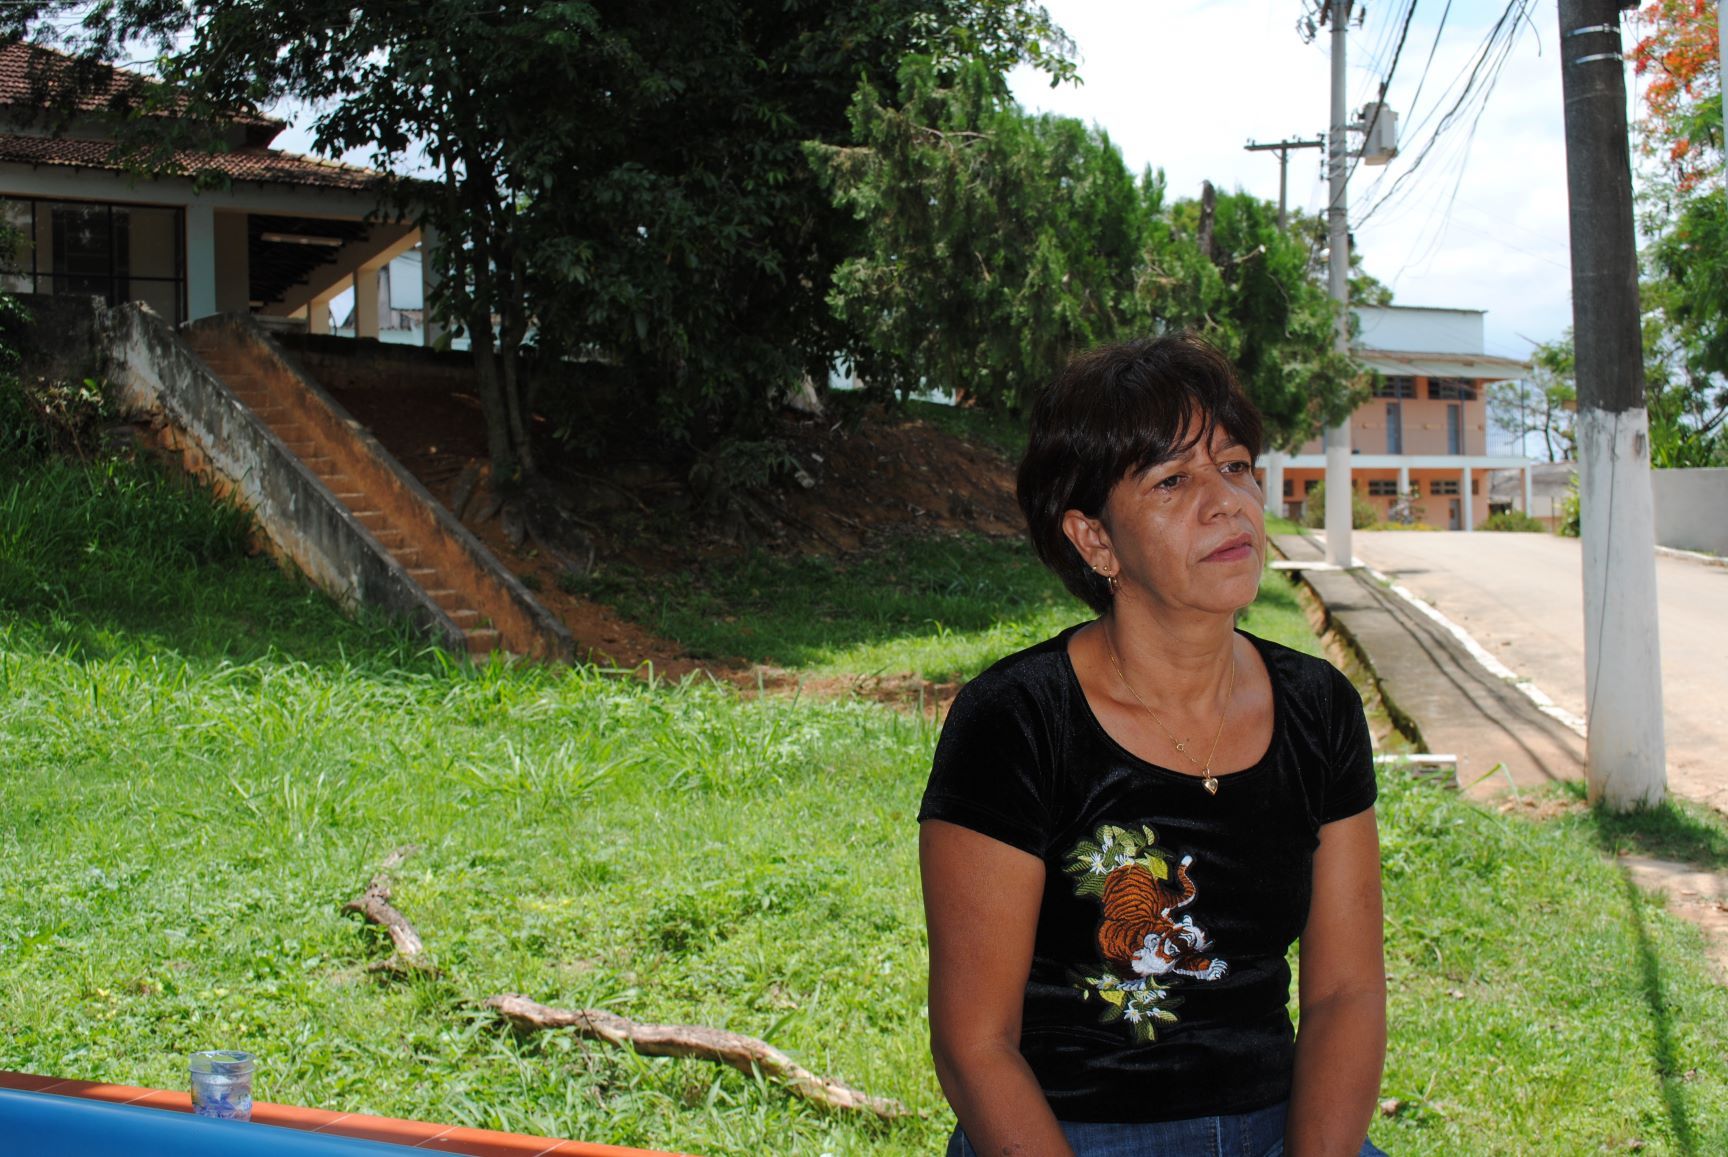 Cleima, filha de ex-interna, entrava na colônia às escondidas para ver a mãe: processo contra o estado com vitória em primeira instância (Foto: Letícia Lopes)